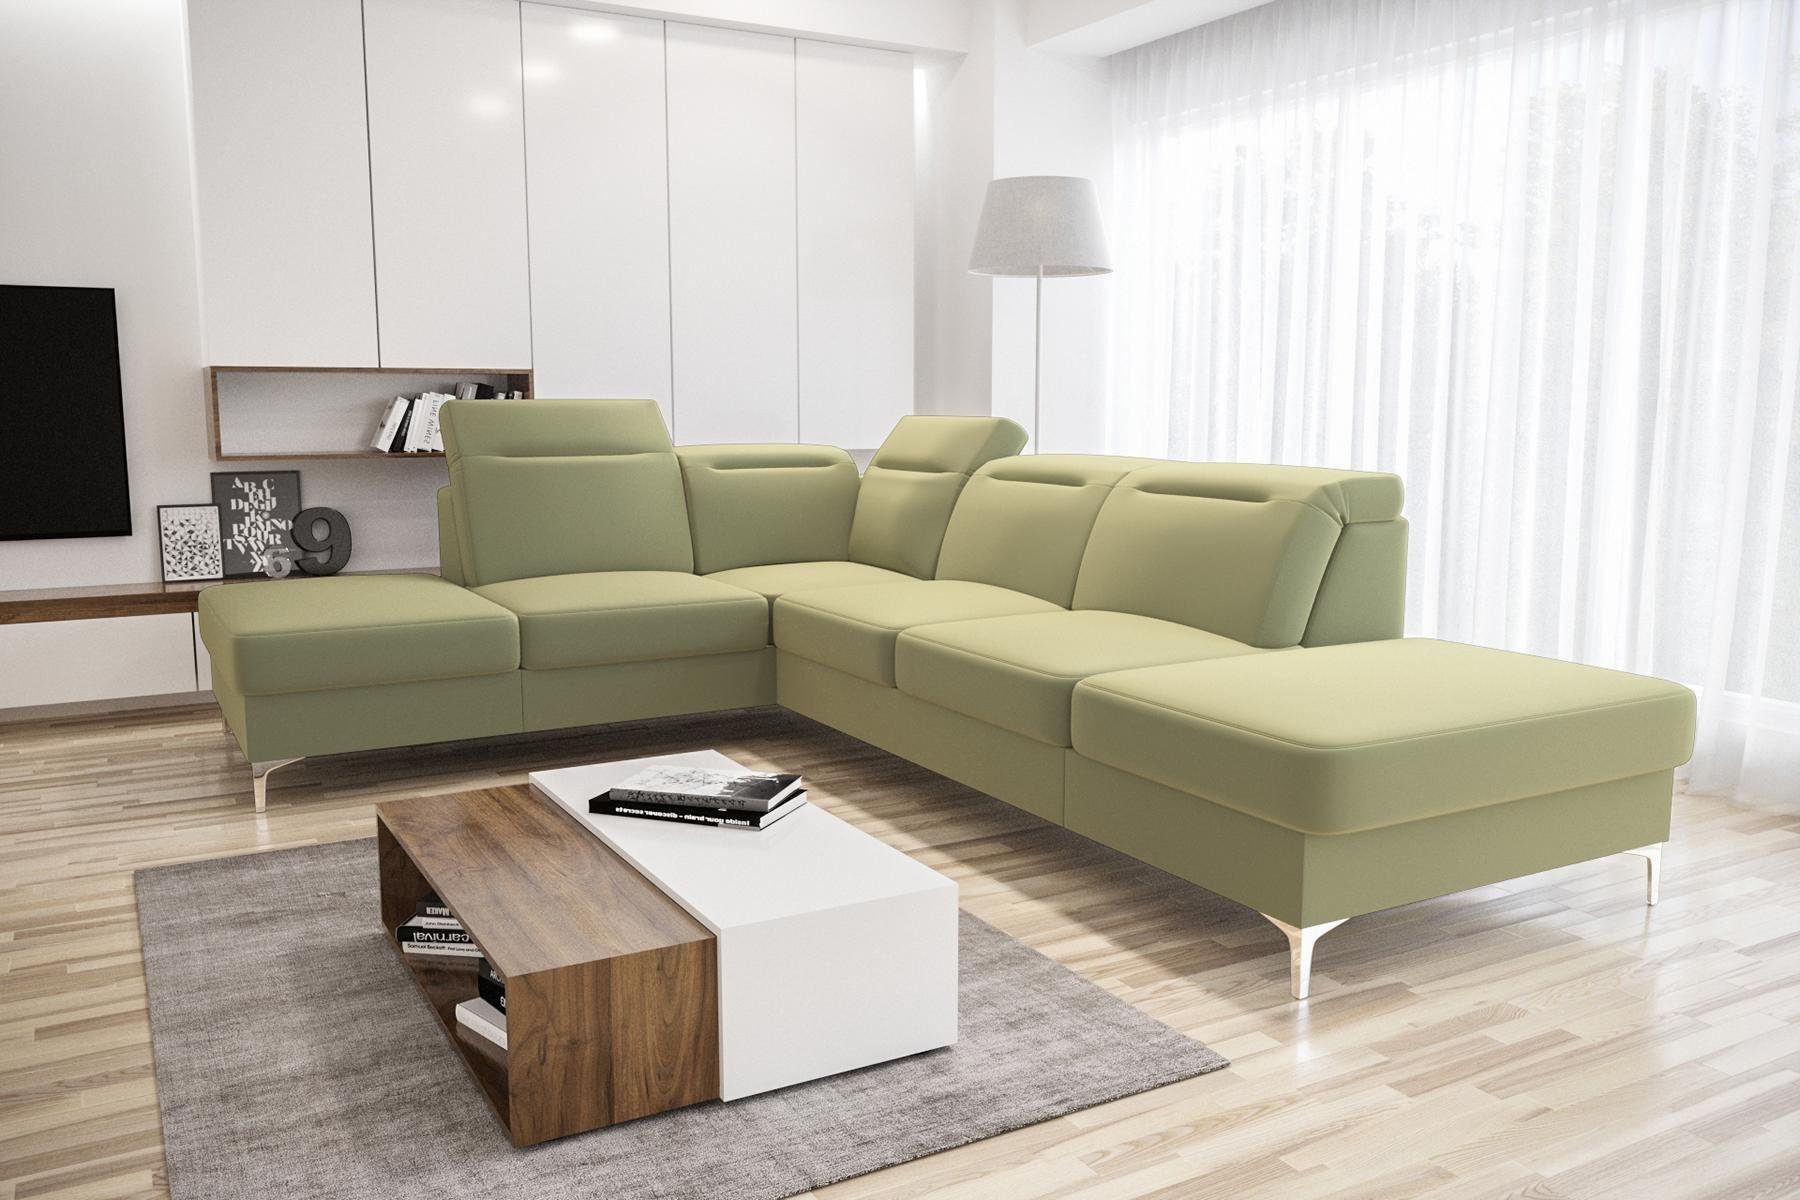 JVmoebel Ecksofa Couch Design, Ecke Sofas Wohnlandschaft Beige Made in Stoffsofa Moderne Europe Sofa